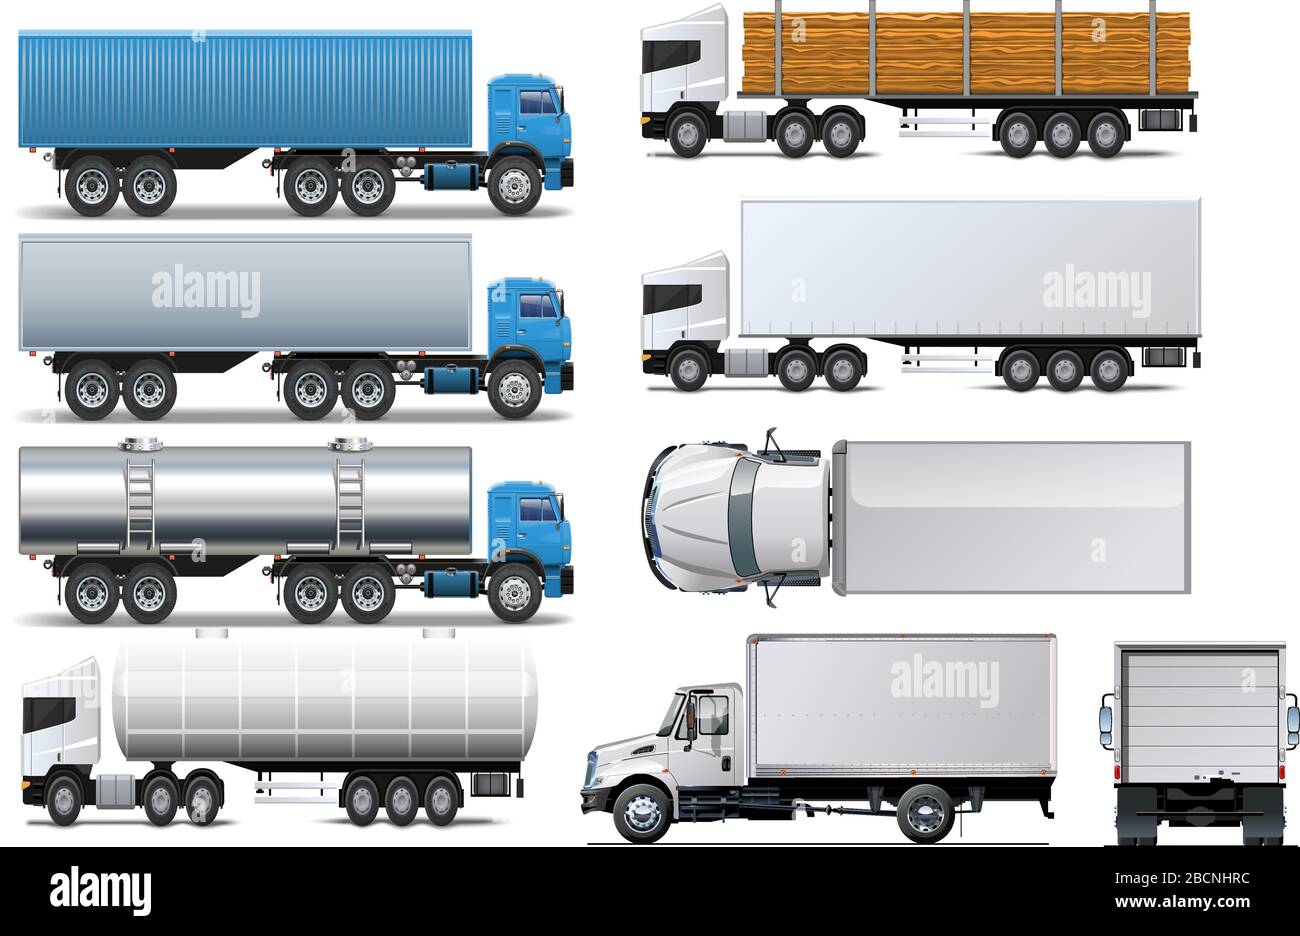 Heavy trucks design vector art Stock Vector